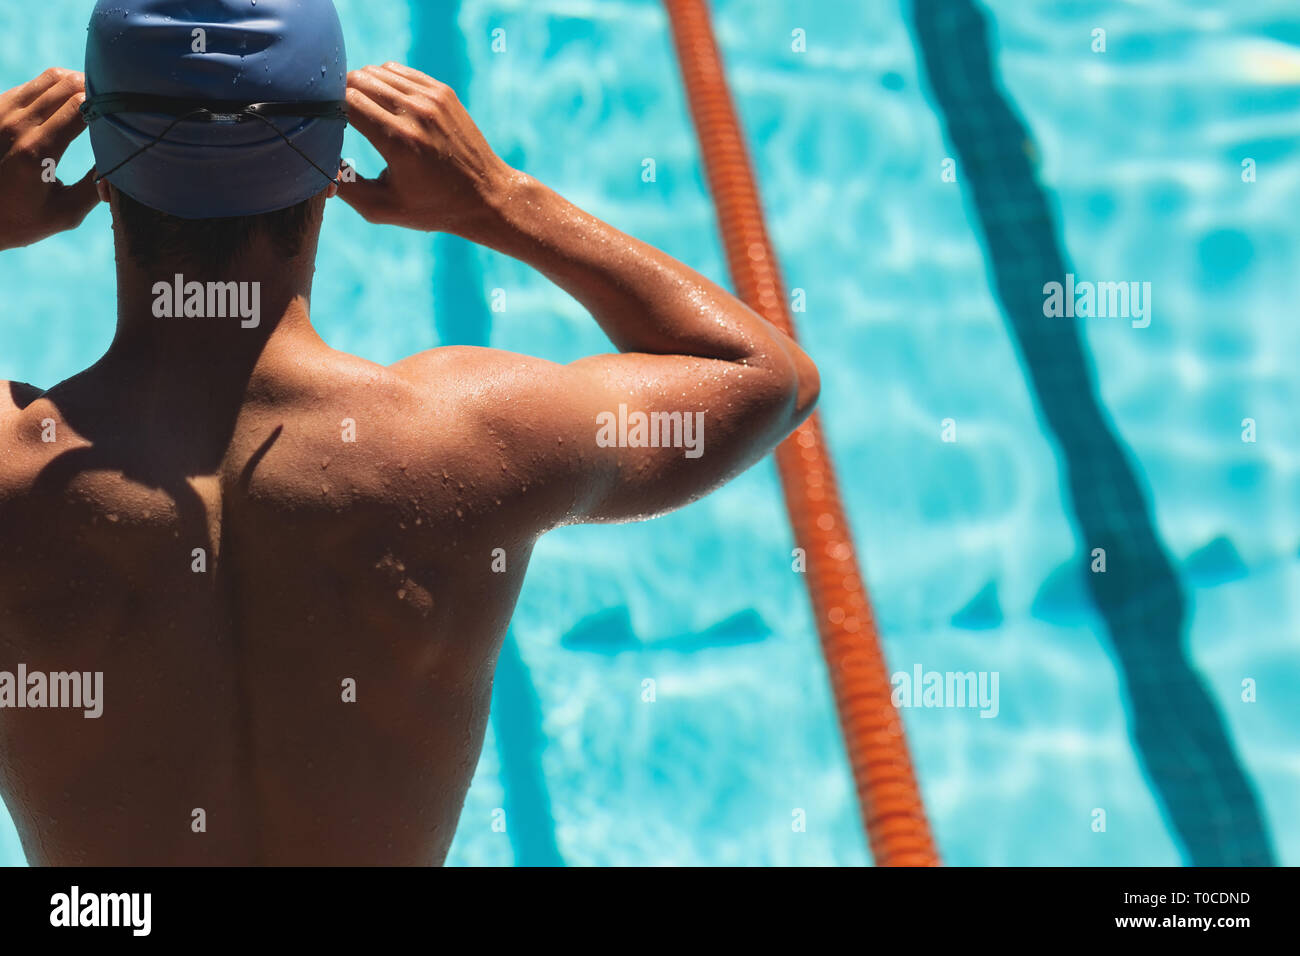 Porter des lunettes de natation nageur à la piscine Banque D'Images